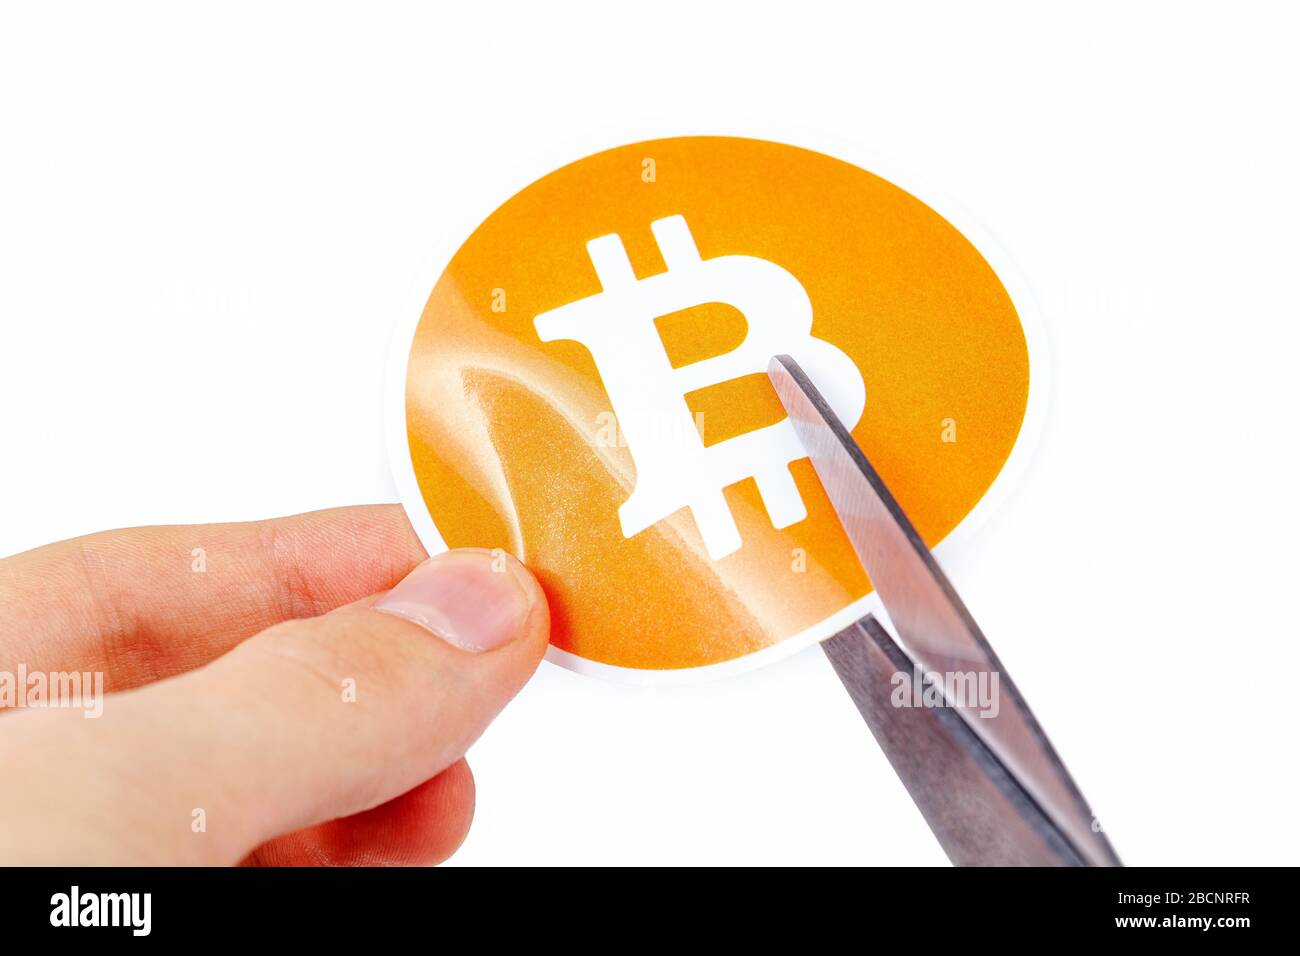 Symbole bitcoin étant coupé en deux avec des ciseaux tenus dans la main humaine, chute de la monnaie numérique Prix Bitcoin chute crypto-monnaie mort, perte de valeur Banque D'Images